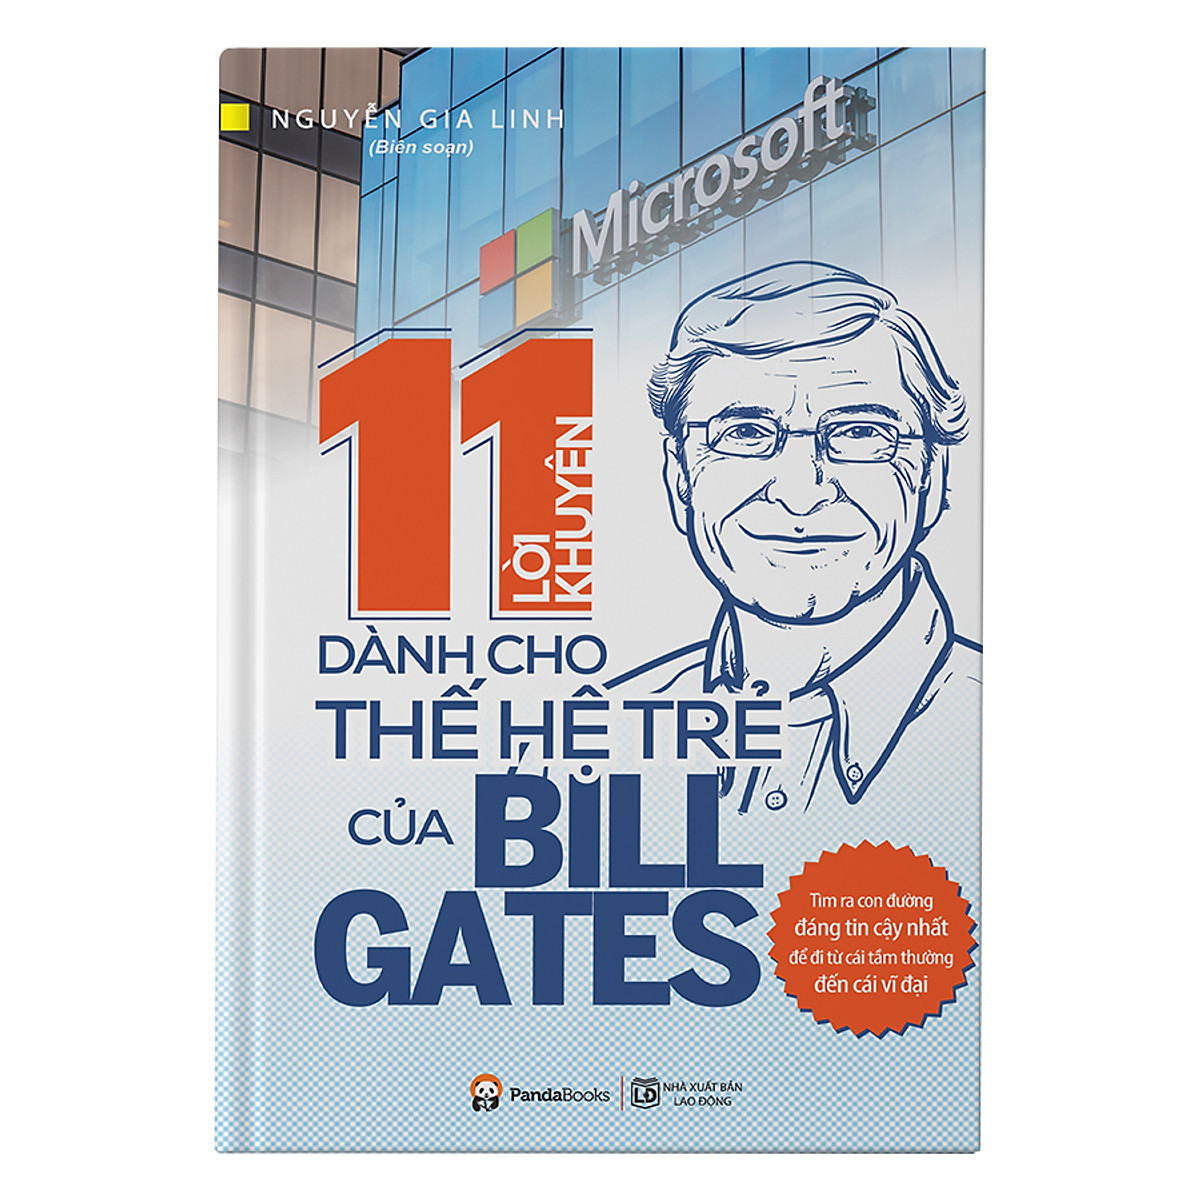 11 Lời Khuyên Dành Cho Thế Hệ Trẻ Của Bill Gates